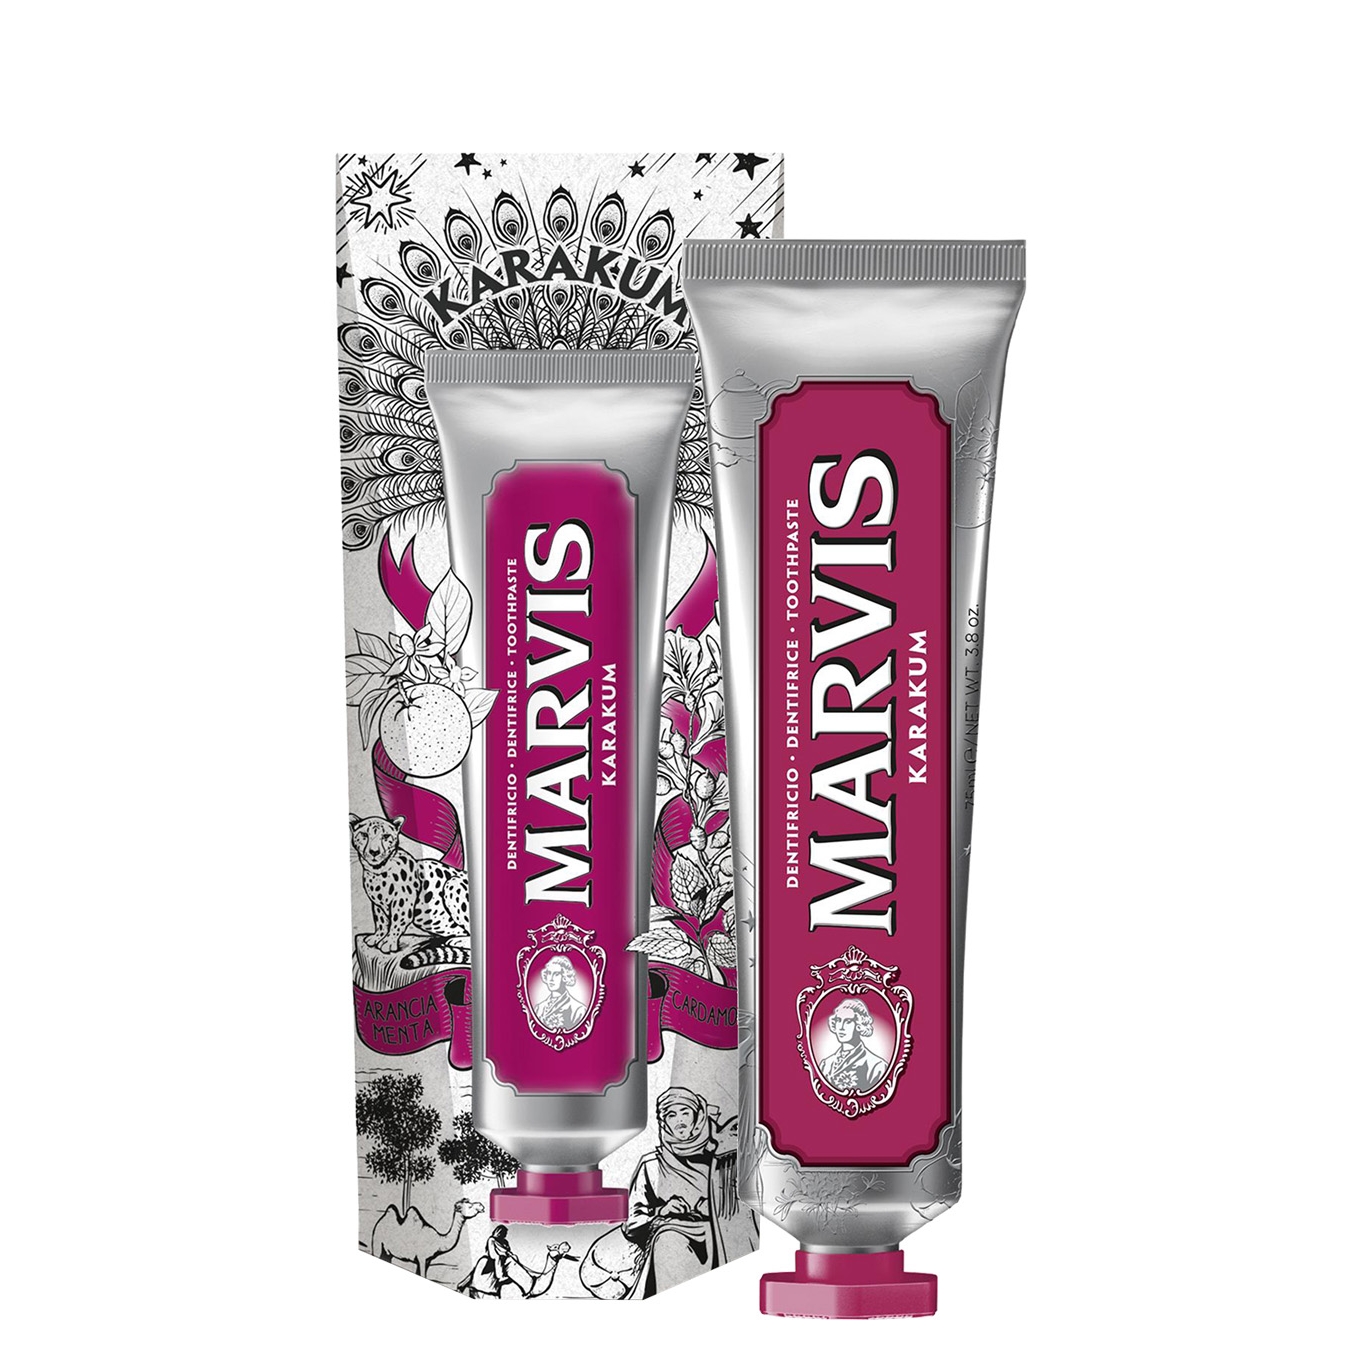 Marvis Wonders Of The World Karakum Toothpaste 75ml